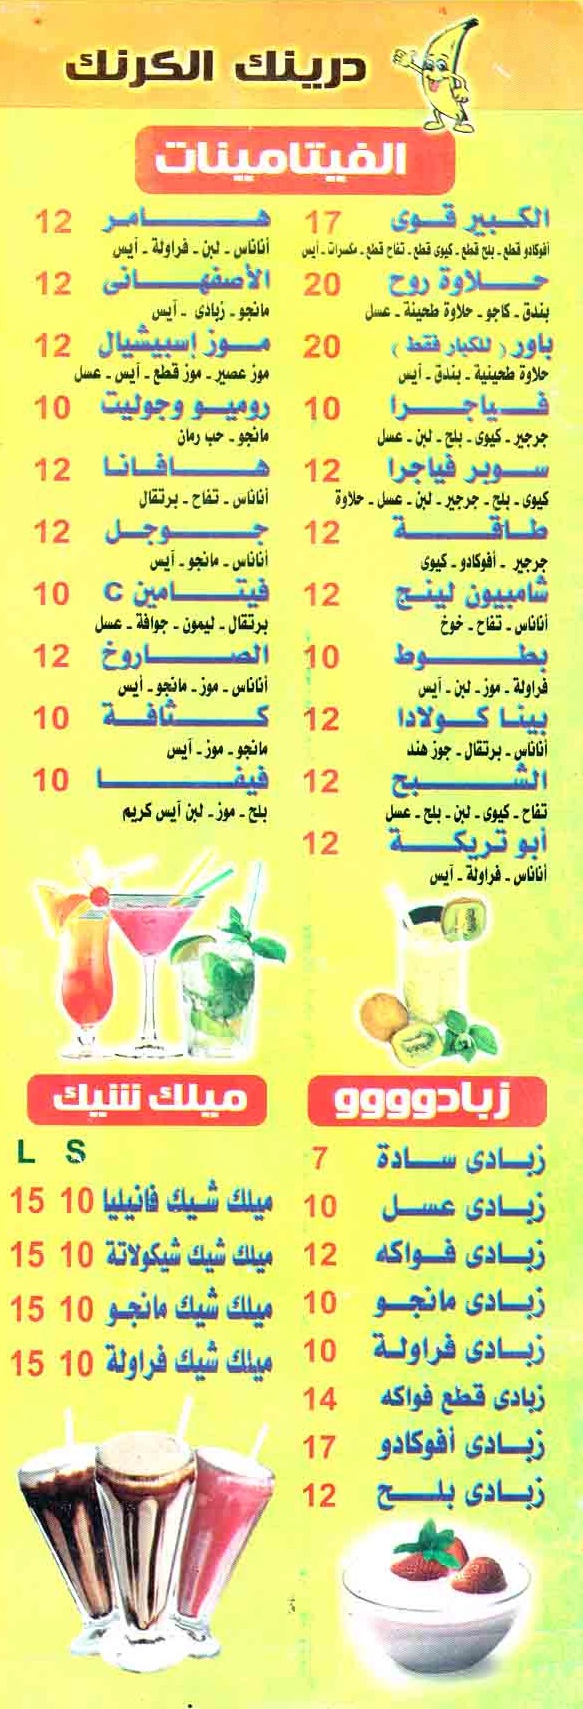 El Karnak Drink menu